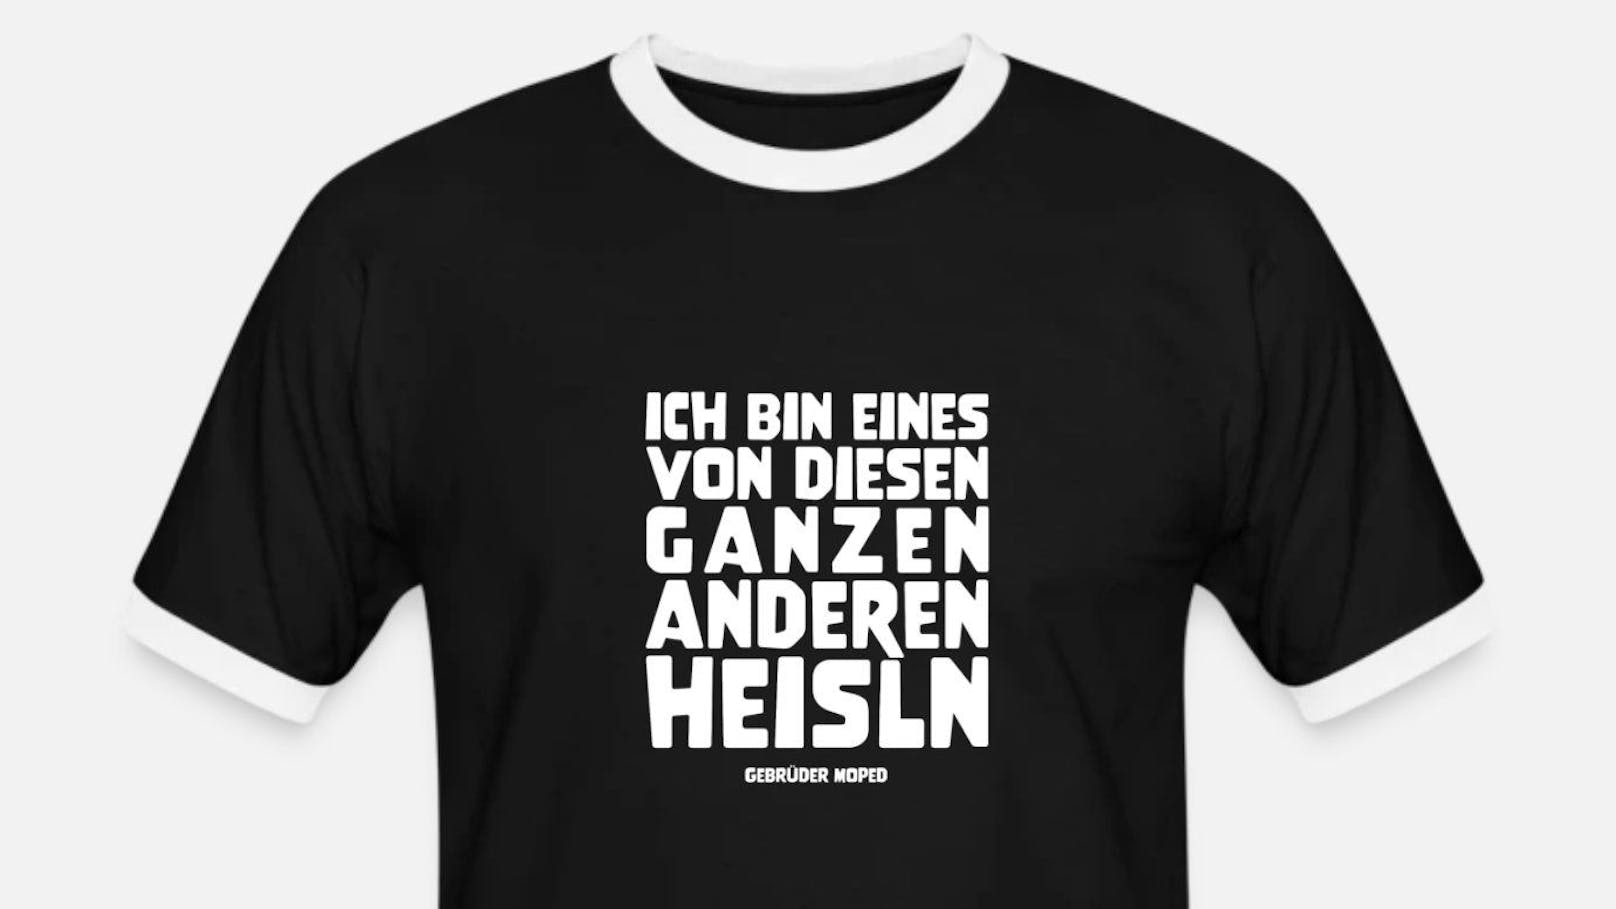 Die Gebrüder Moped verewigen den Heisl-Sager des Wiener SPÖ-Politiker Ernst Nevrivy auf T-Shirts, Taschen und Turnbeuteln.